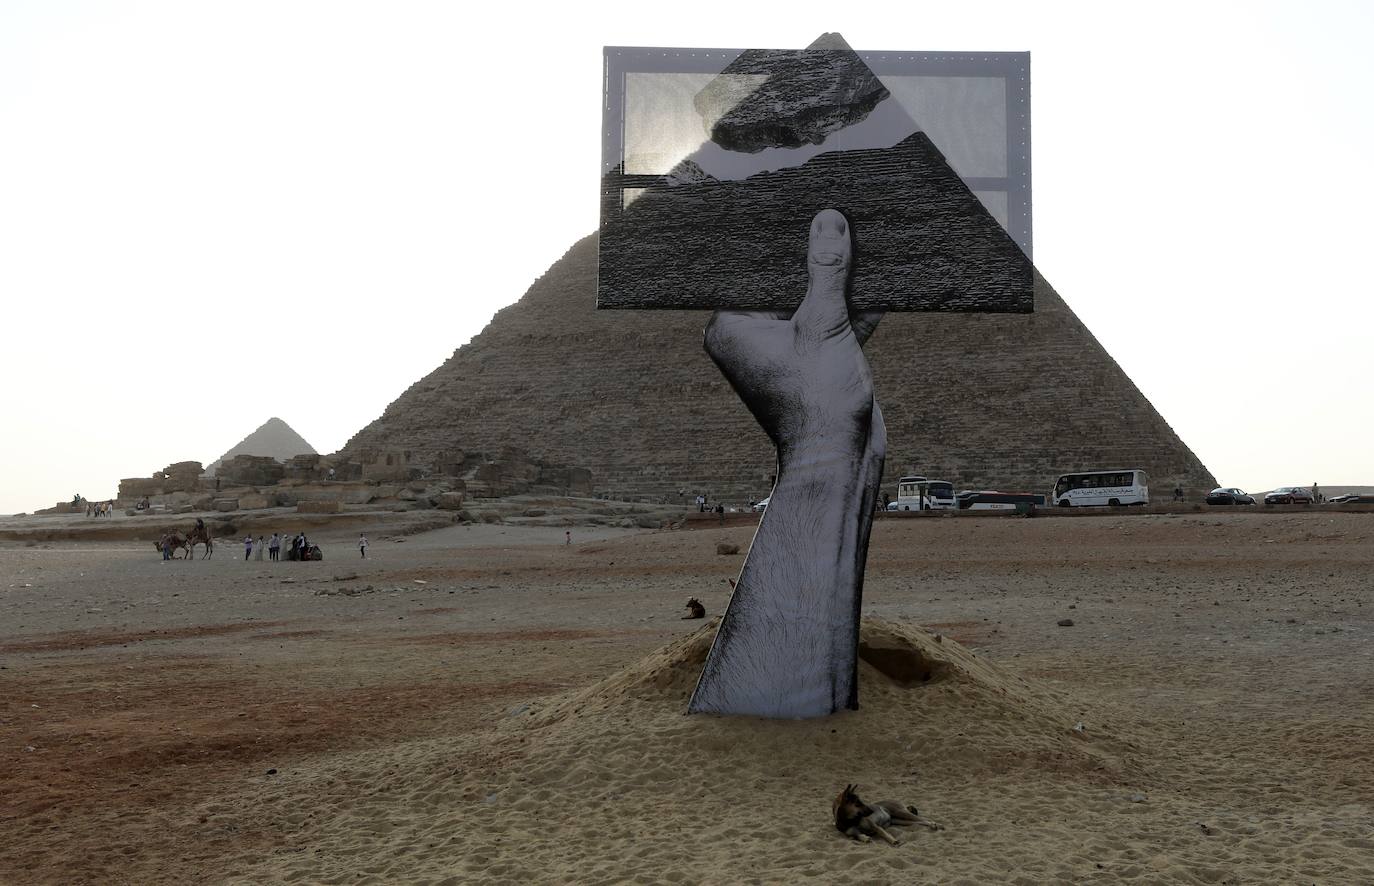 Las pirámides Giza como nunca antes las habías visto